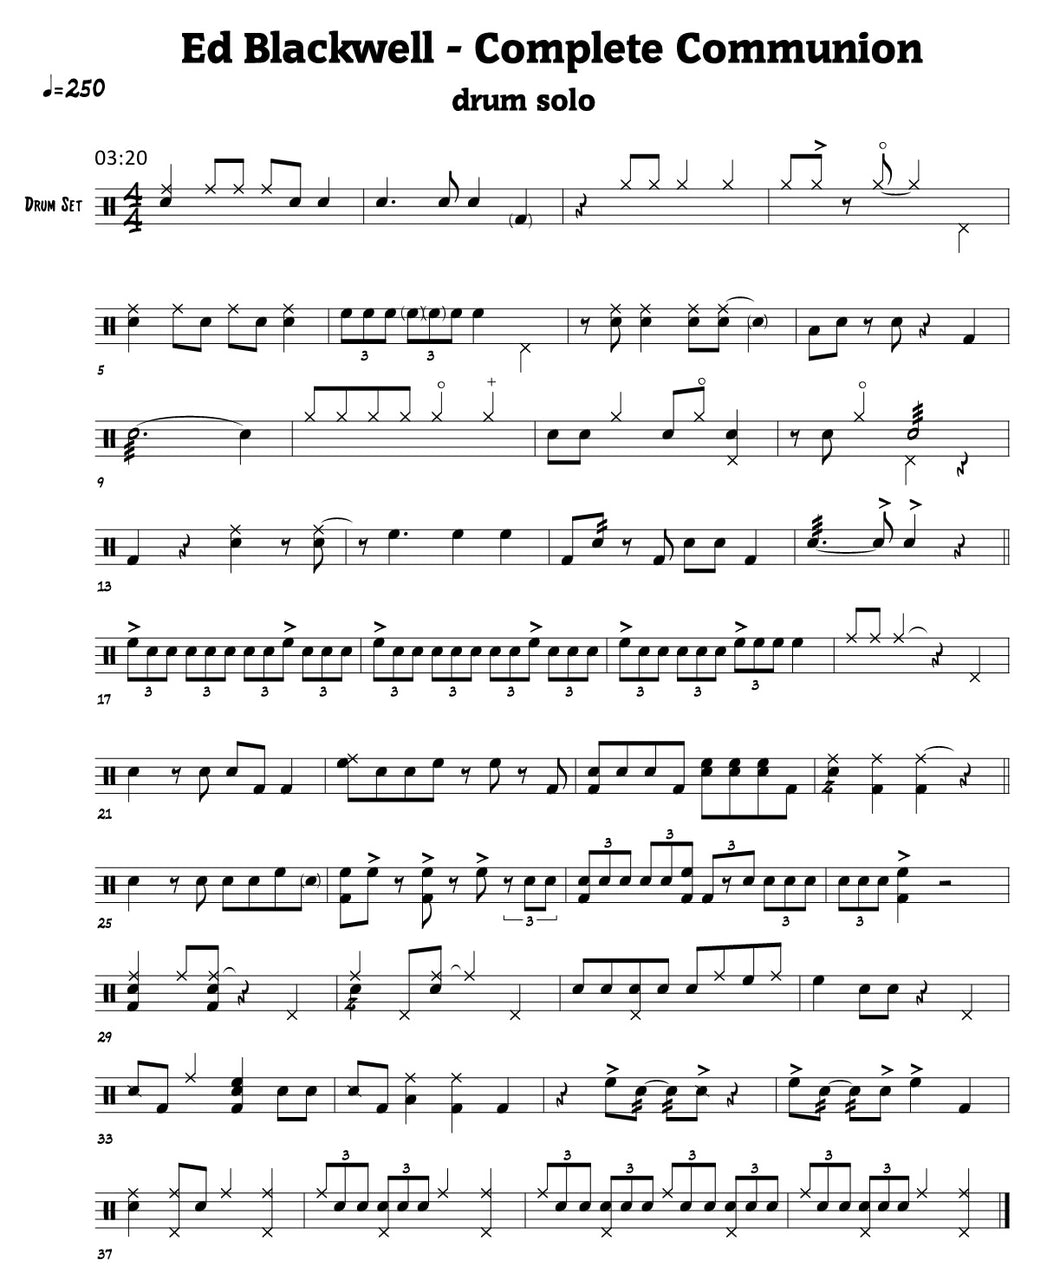 Complete Communion - Don Cherry - Selection Drum Transcription / Drum Sheet Music - FrancisDrummingBlog.com